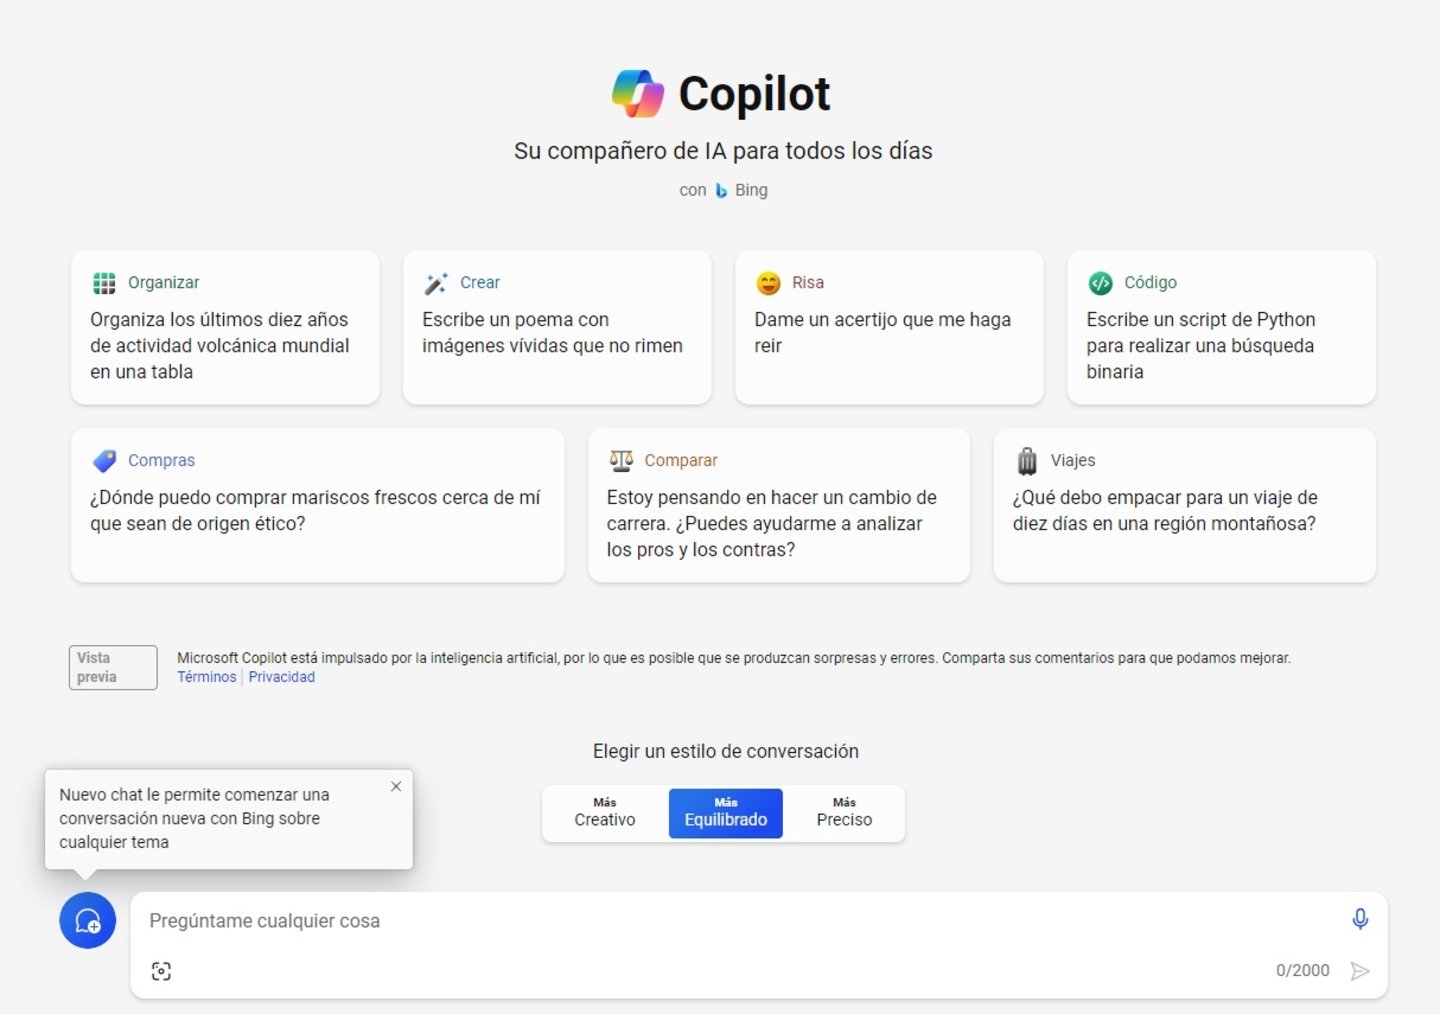 Microsoft Copilot estrena version web: el asistente de IA ahora se puede usar desde cualquier dispositivo